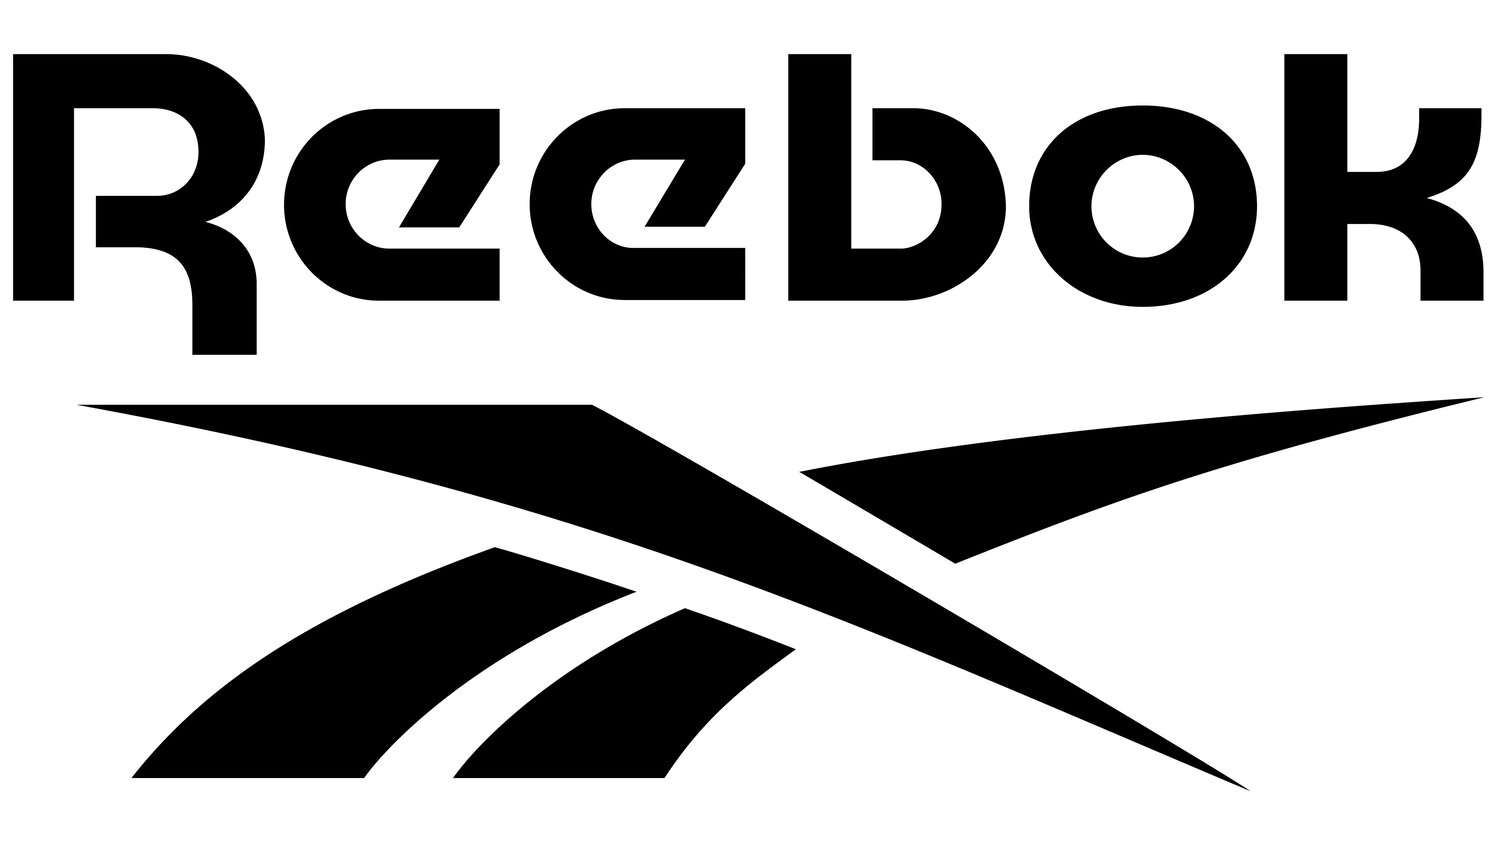 Reebok-Puzzle Online-Puzzle